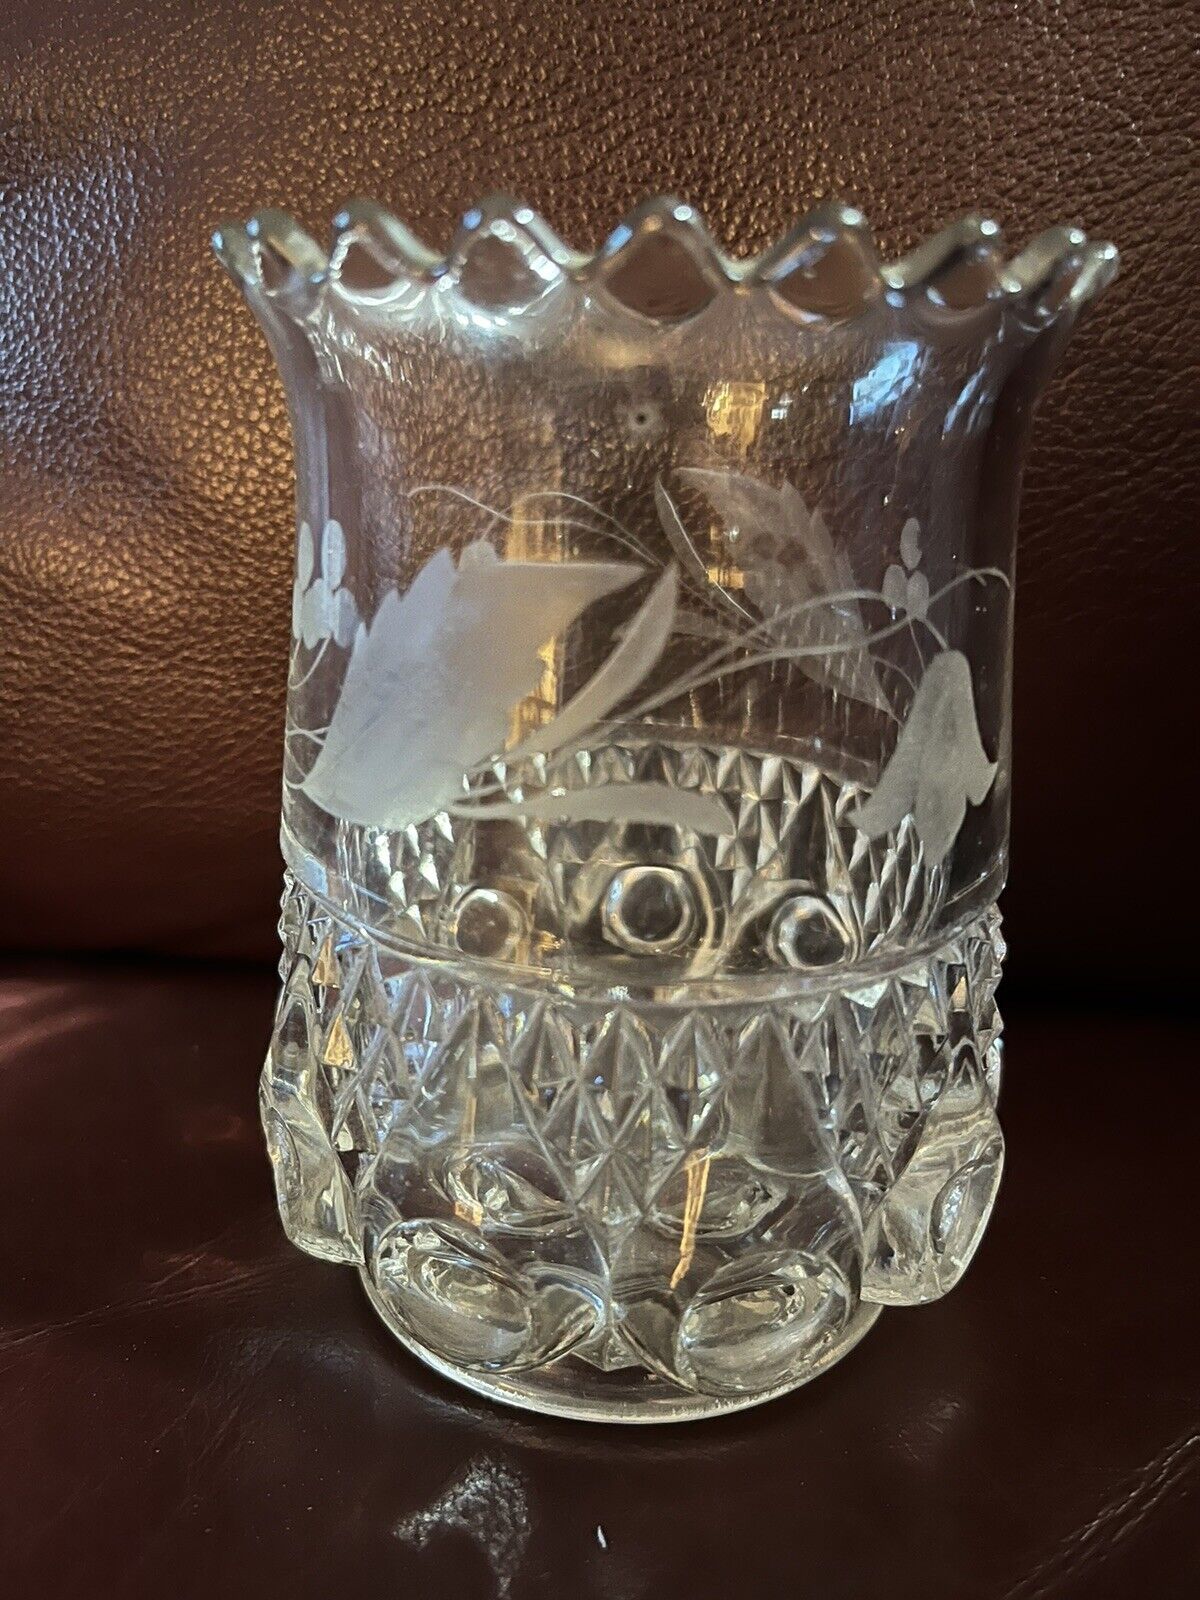 Vintage Etched Cut Crystal Vase       4 3/4” Heavy Crystal Etched Floral